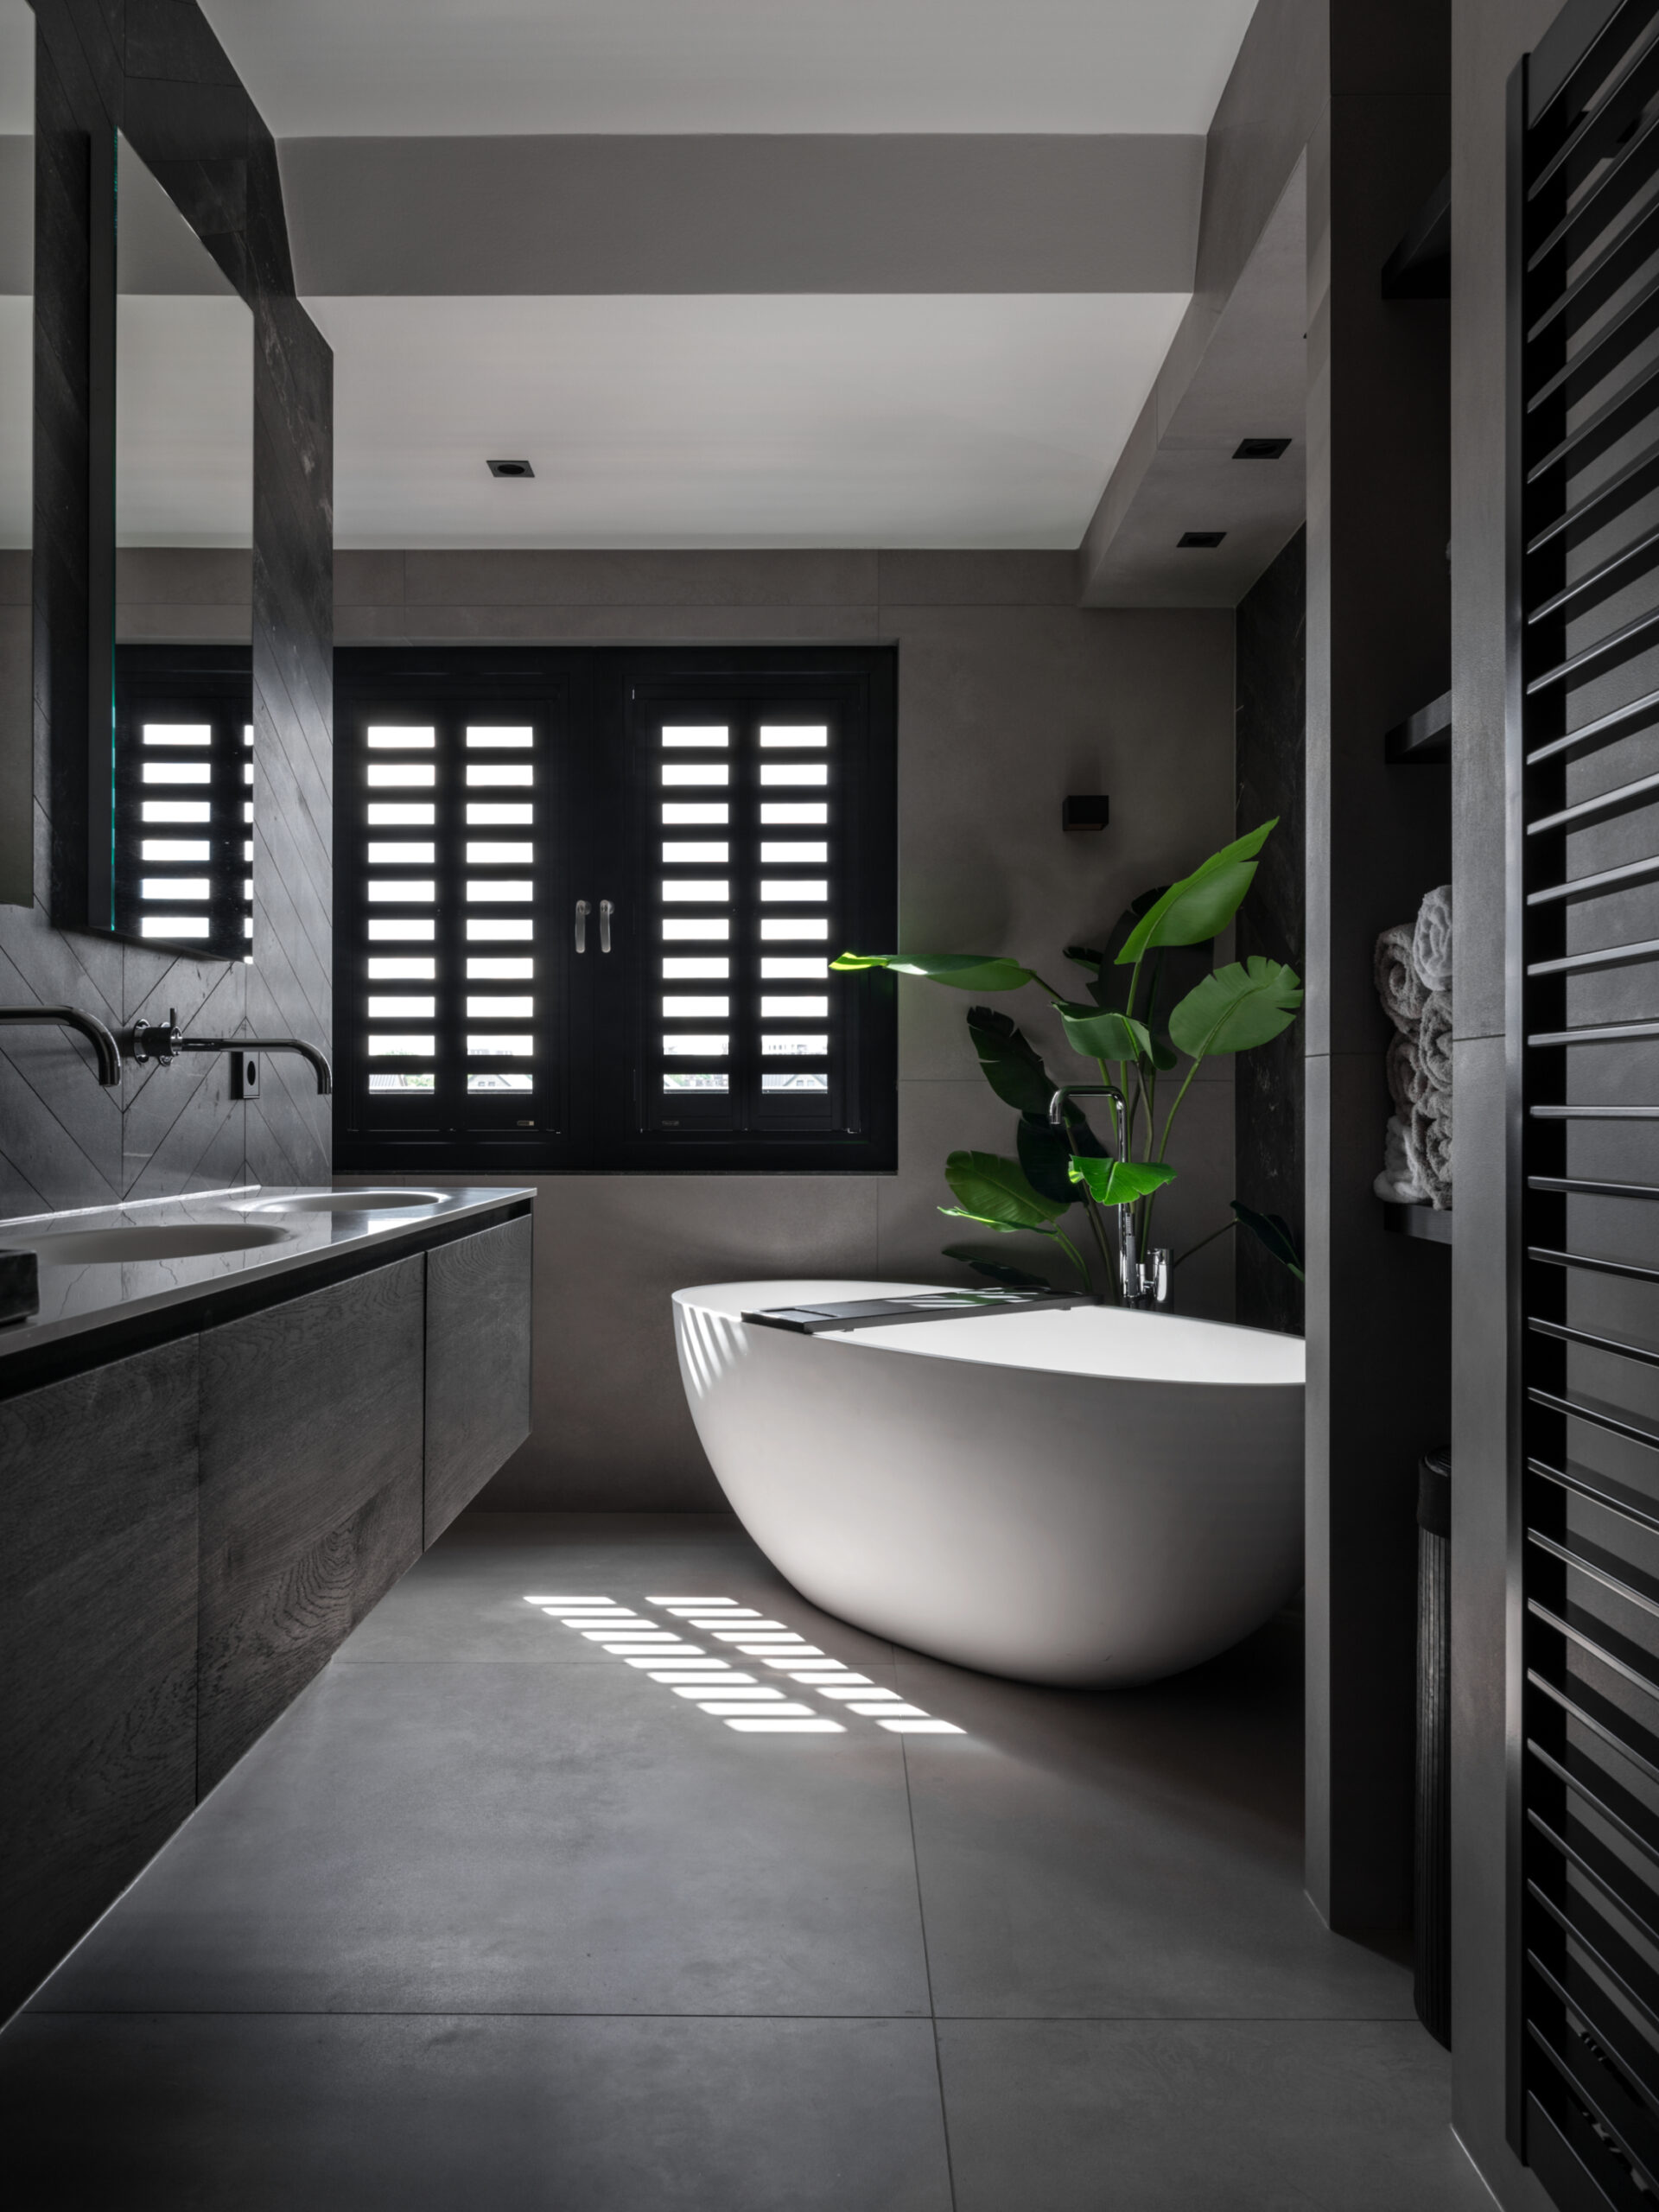 Bekijk de unieke luxe badkamers van Kamer